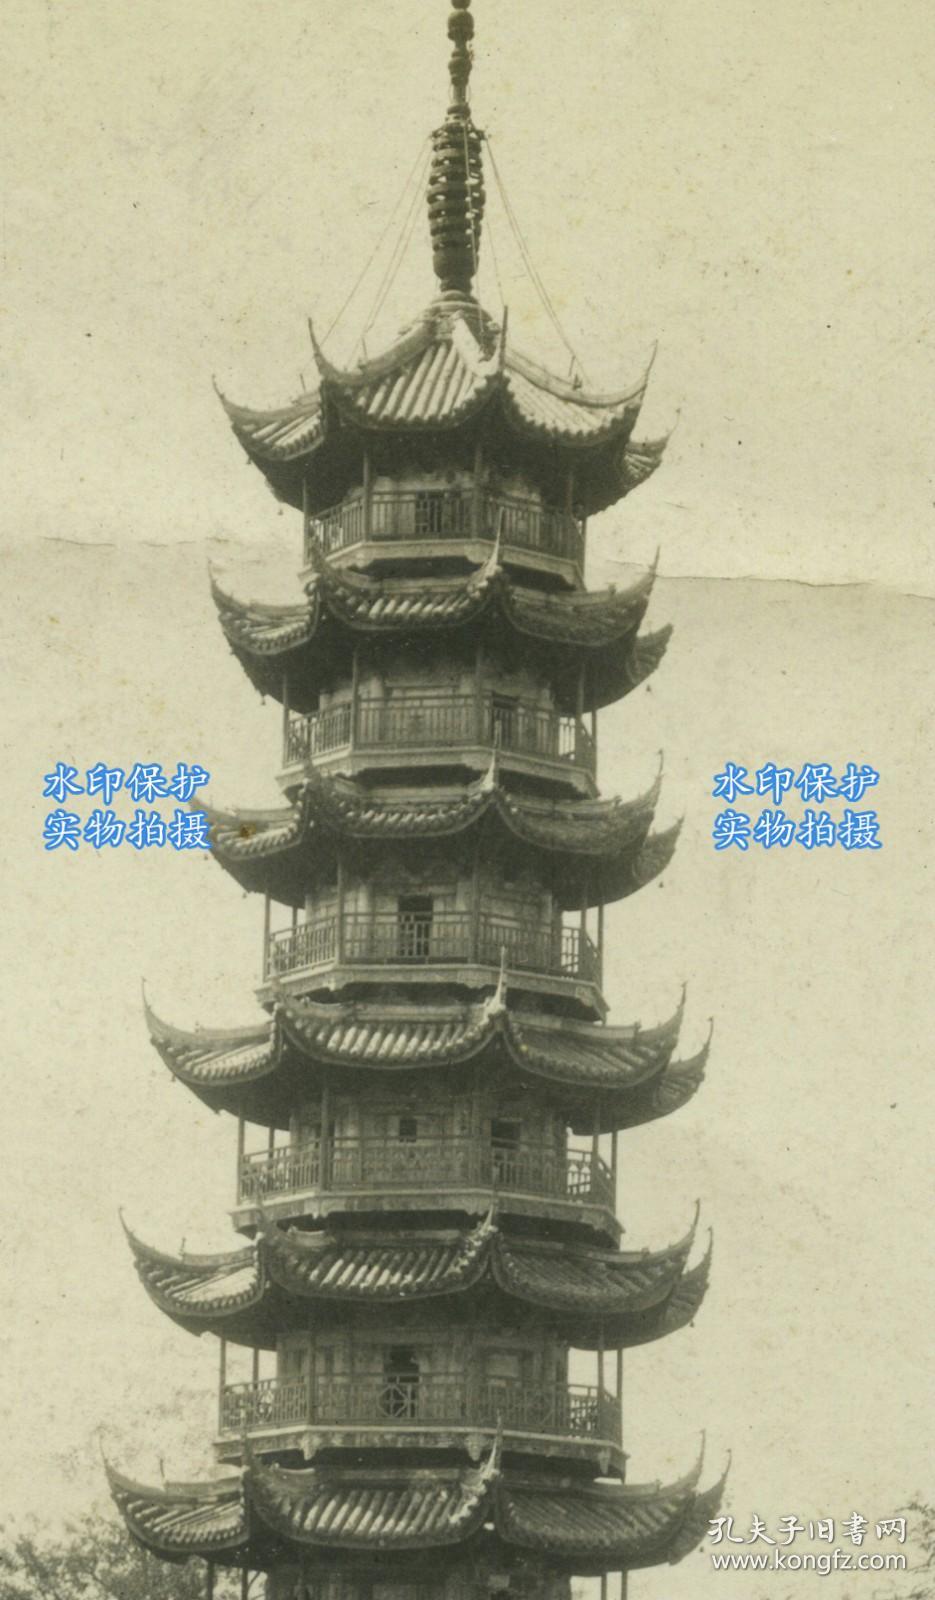 民国上海佛教著名寺院龙华寺的龙华寺塔老照片，其位于南郊龙华街道， 是上海地区历史最久、规模最大的古刹, 曾叫大兴国万寿慈华禅寺。13.4X8.3厘米，泛银